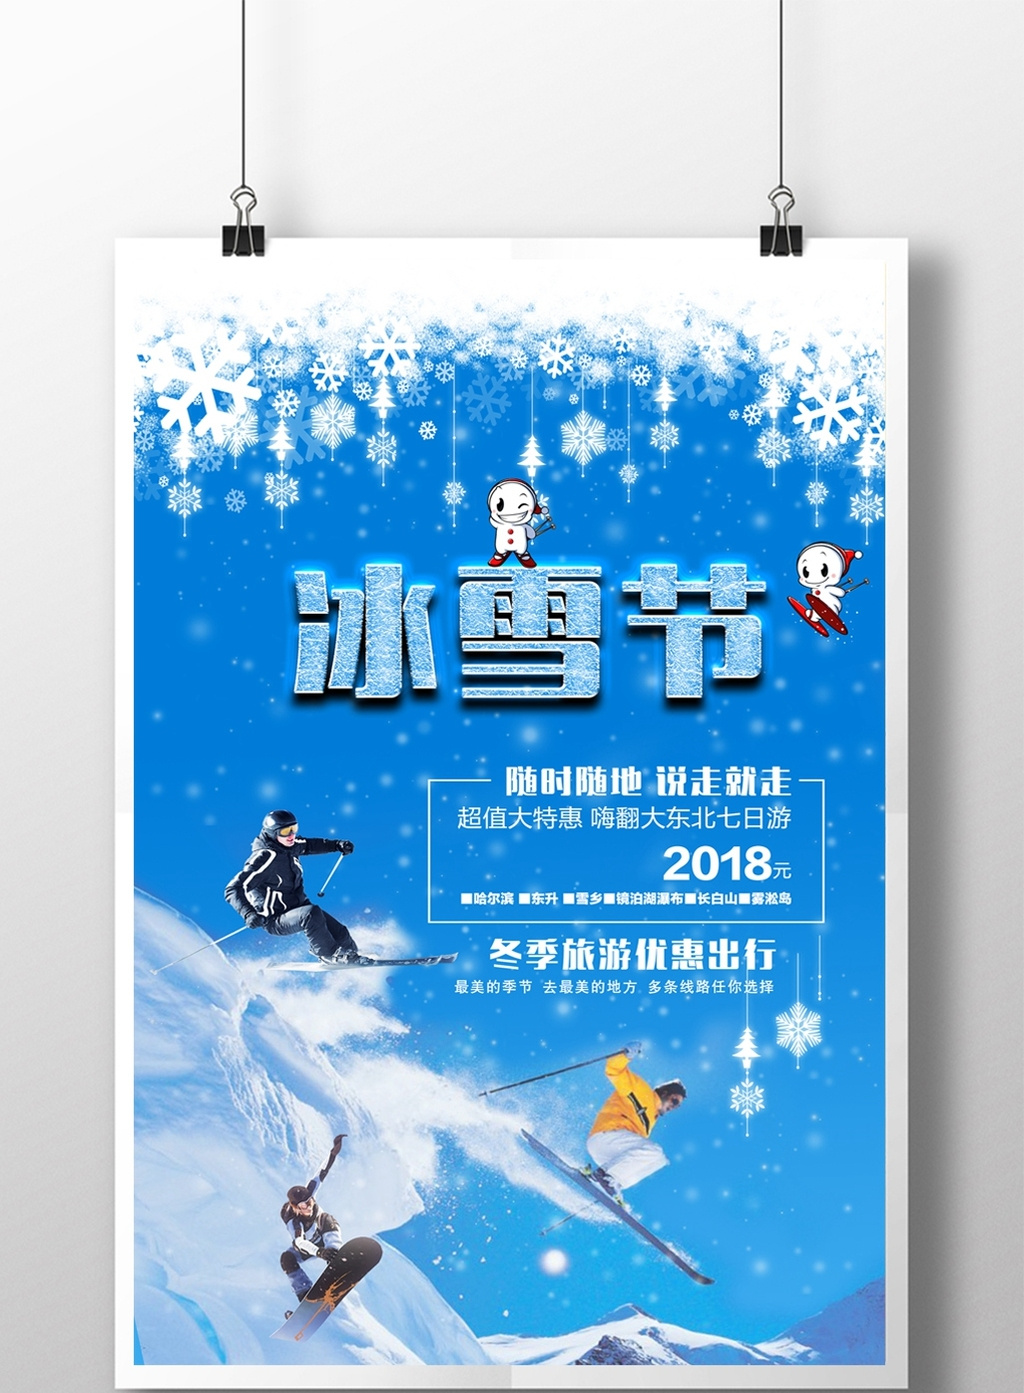 包图网提供精美好看的冰雪节宣传海报素材免费下载,本次作品主题是图片